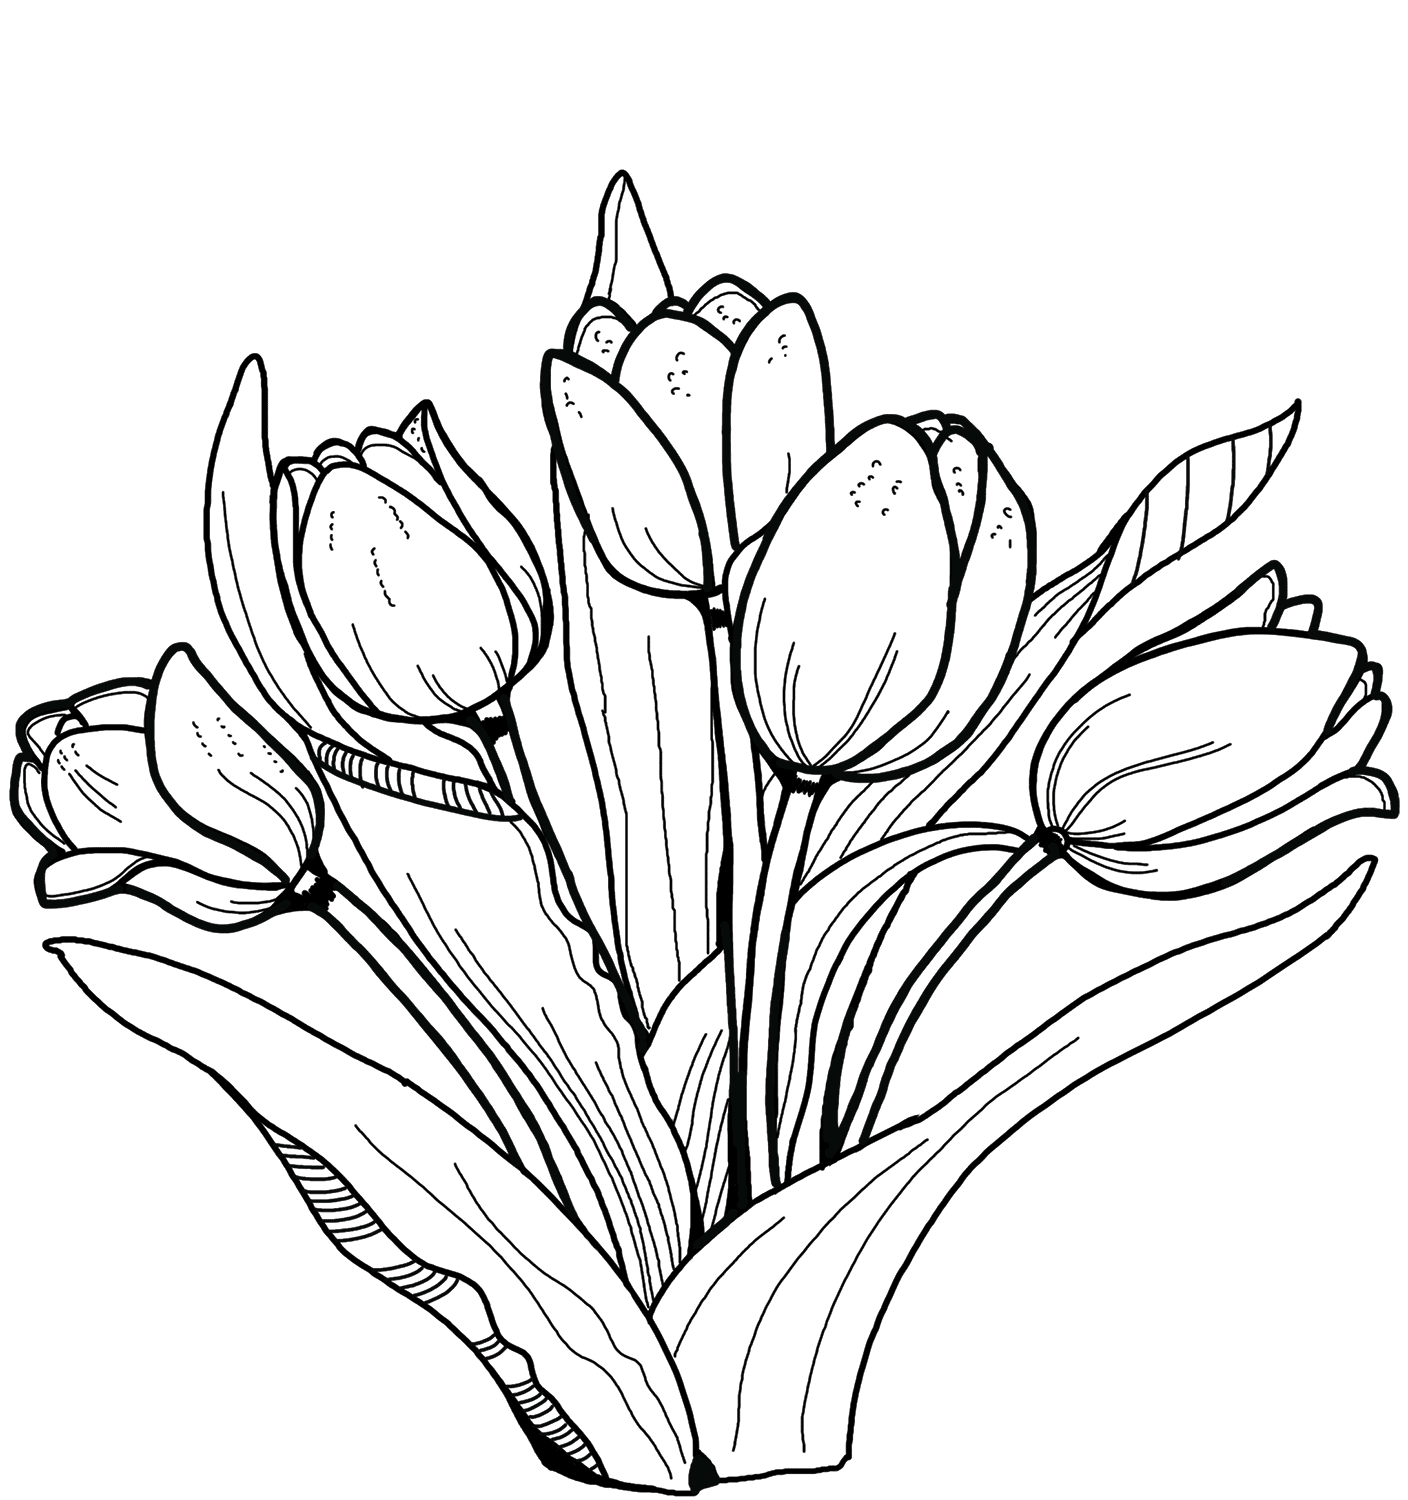 Para Colorear Tulipanes Muchos tulipanes